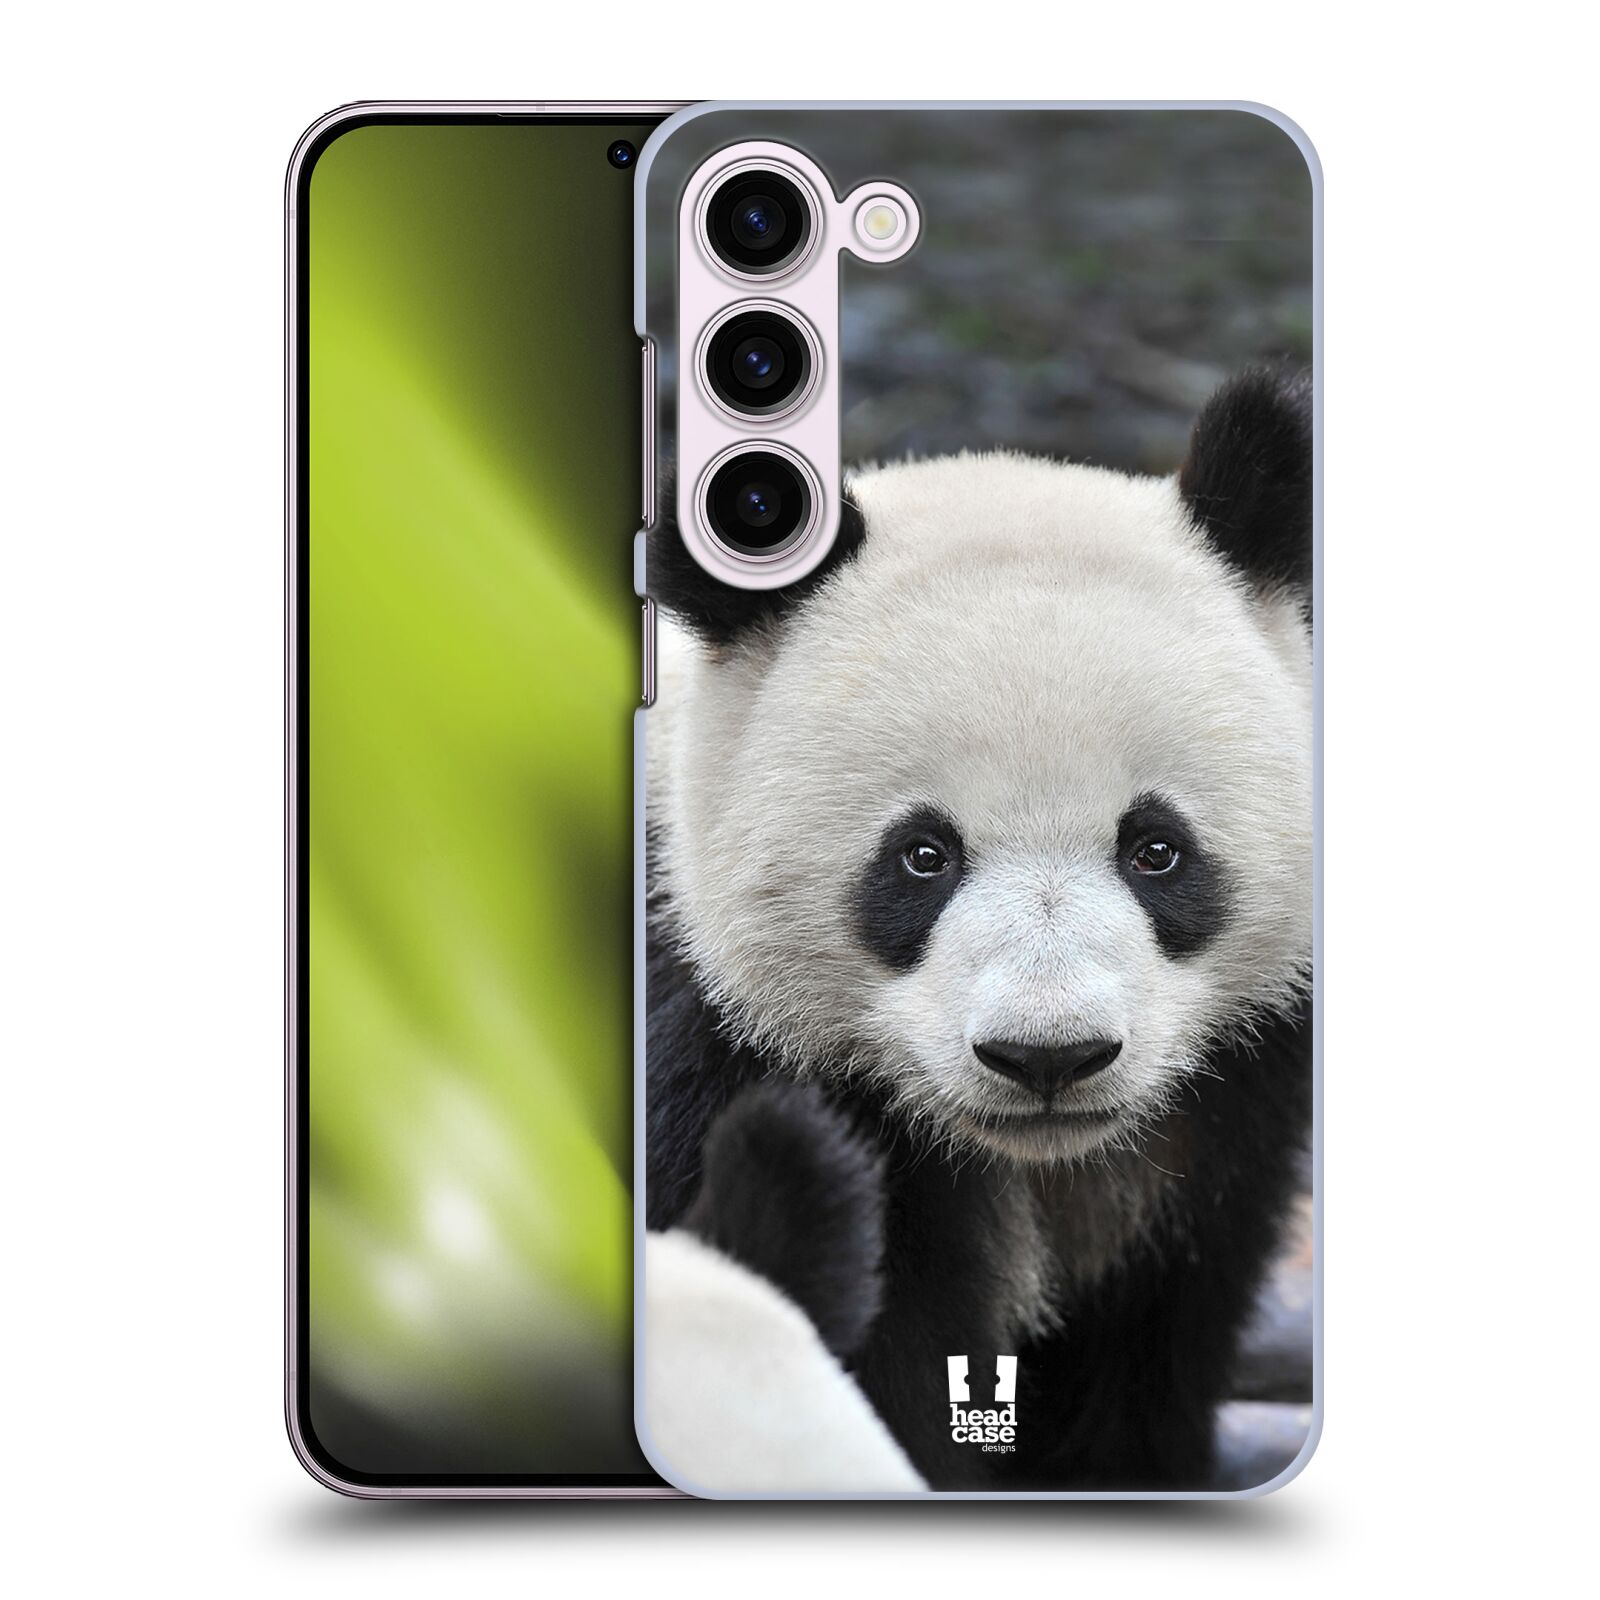 Plastový obal HEAD CASE na mobil Samsung Galaxy S23+ vzor Divočina, Divoký život a zvířata foto MEDVĚD PANDA